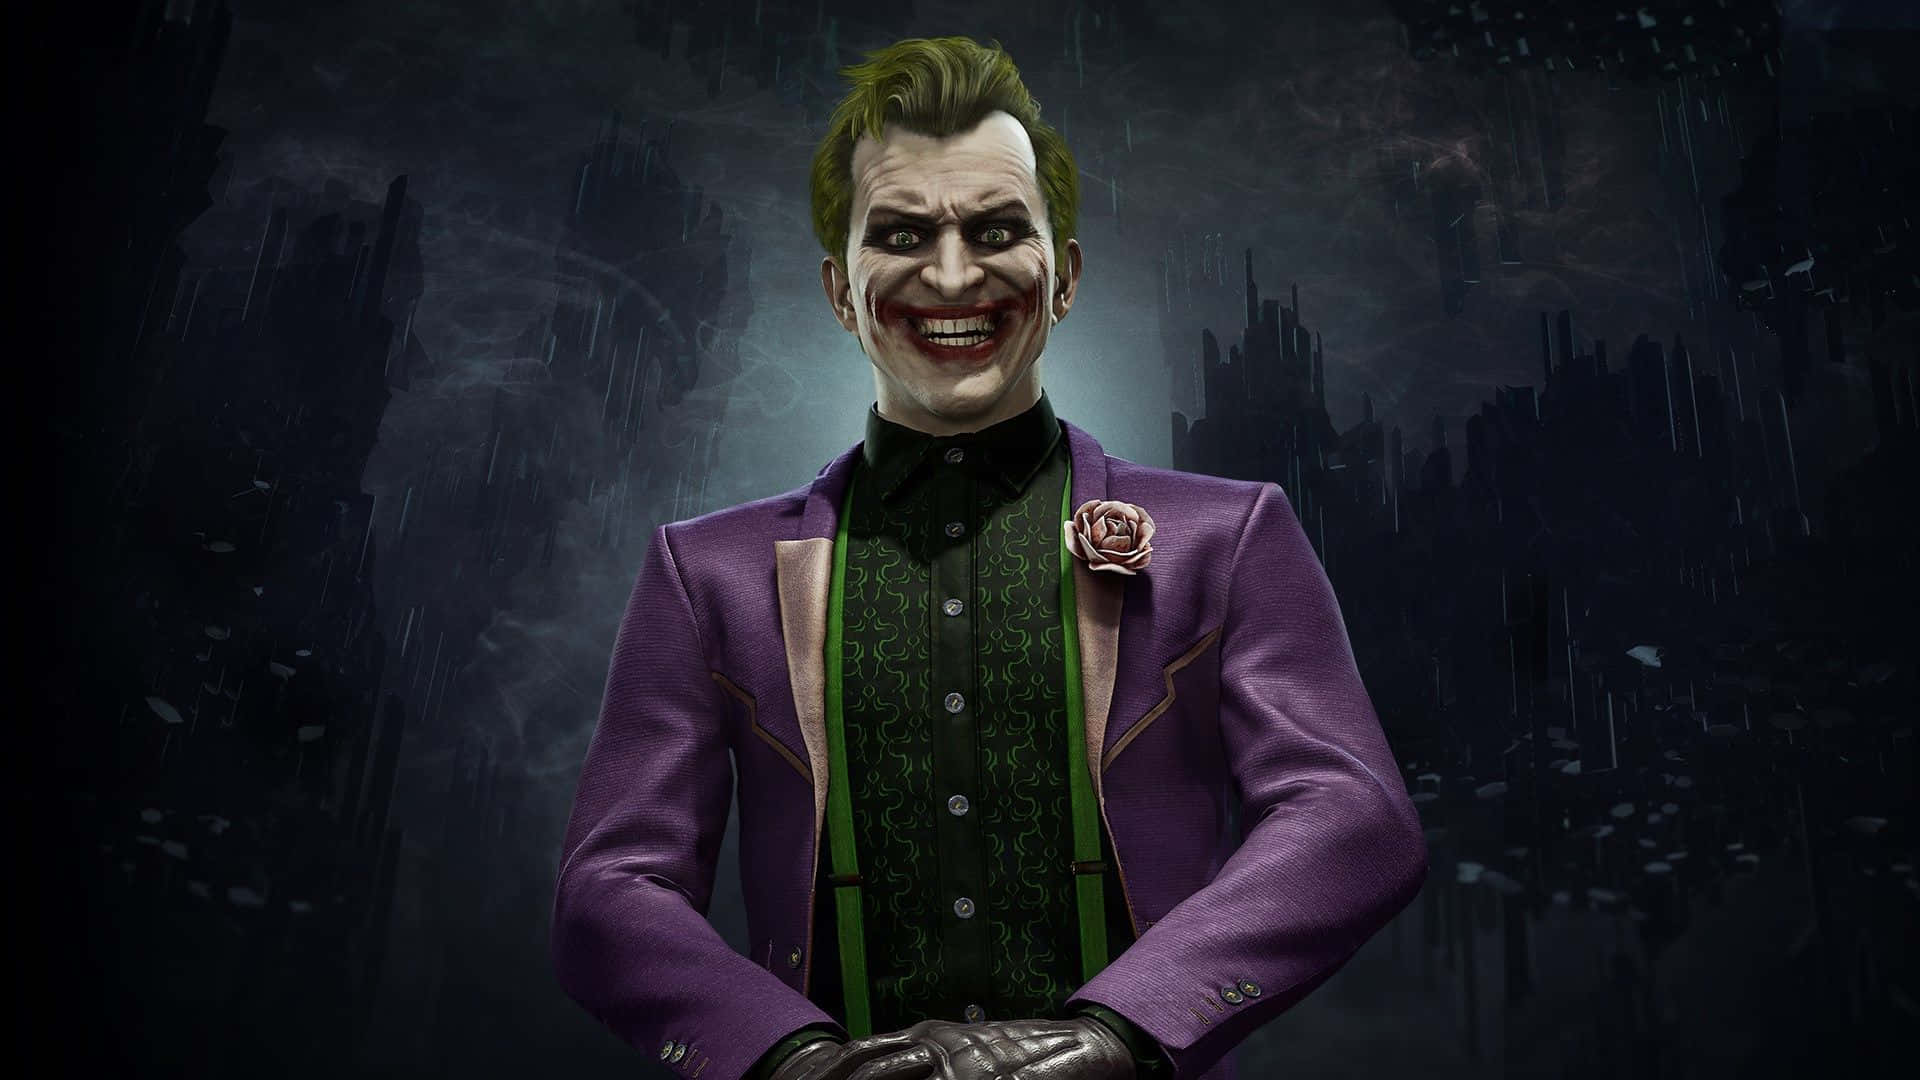 Dangerous Joker Batman Villain Art Wallpaper